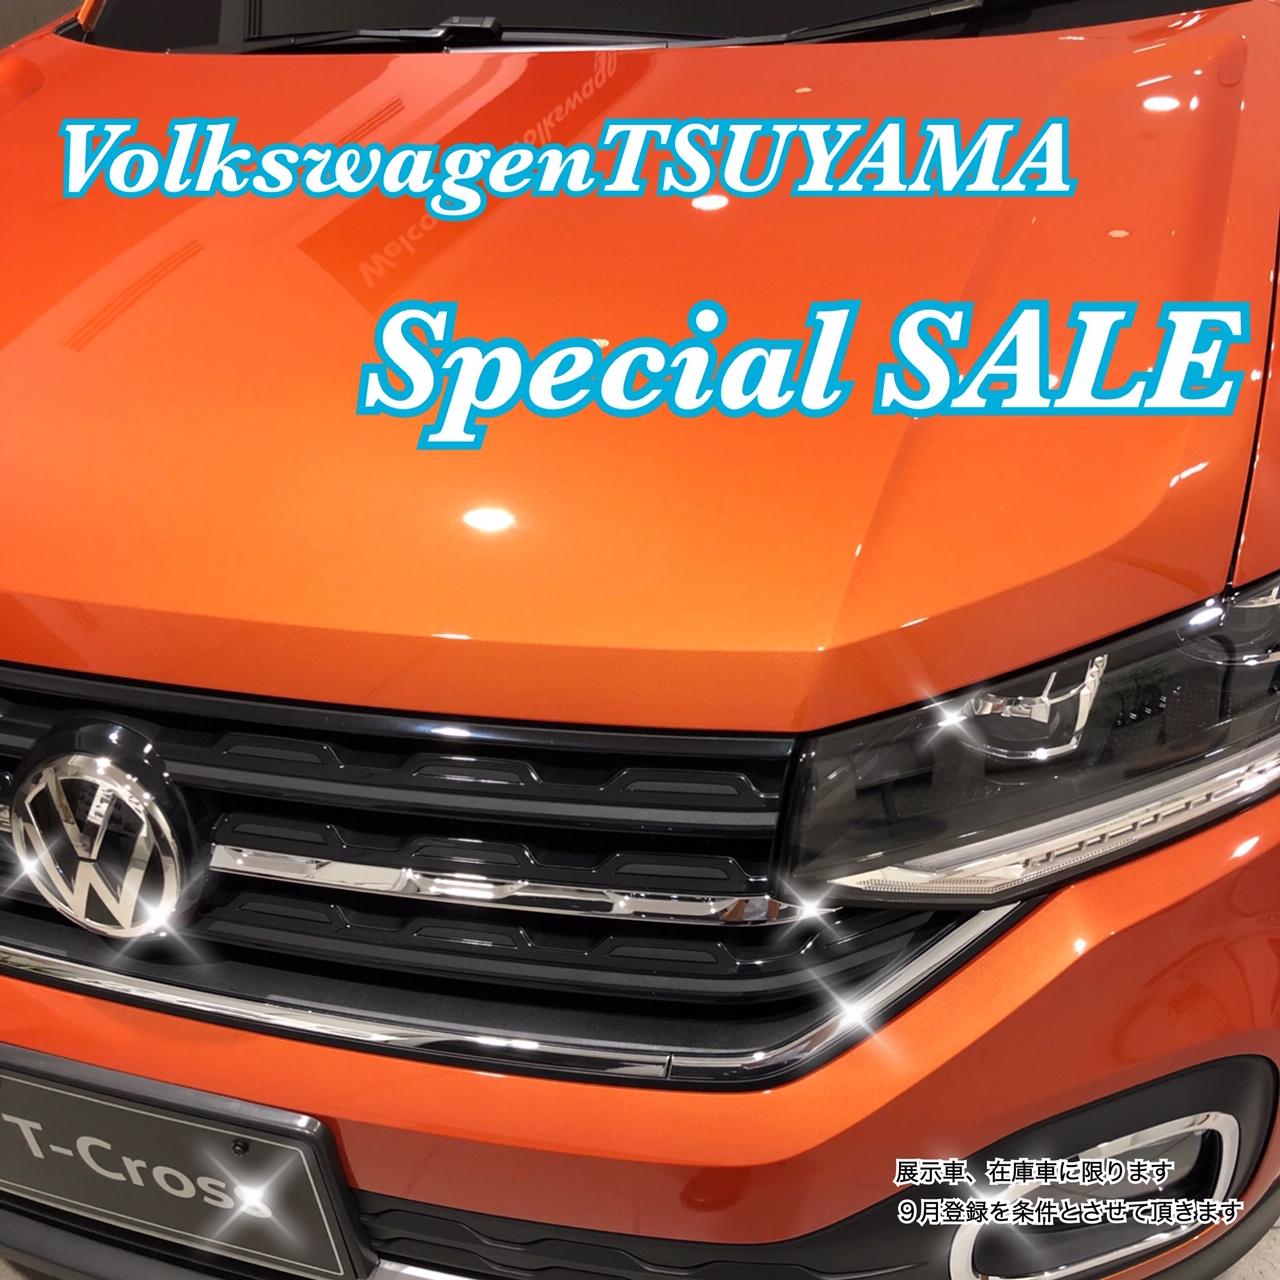 Top Volkswagen津山 Volkswagen Tsuyama